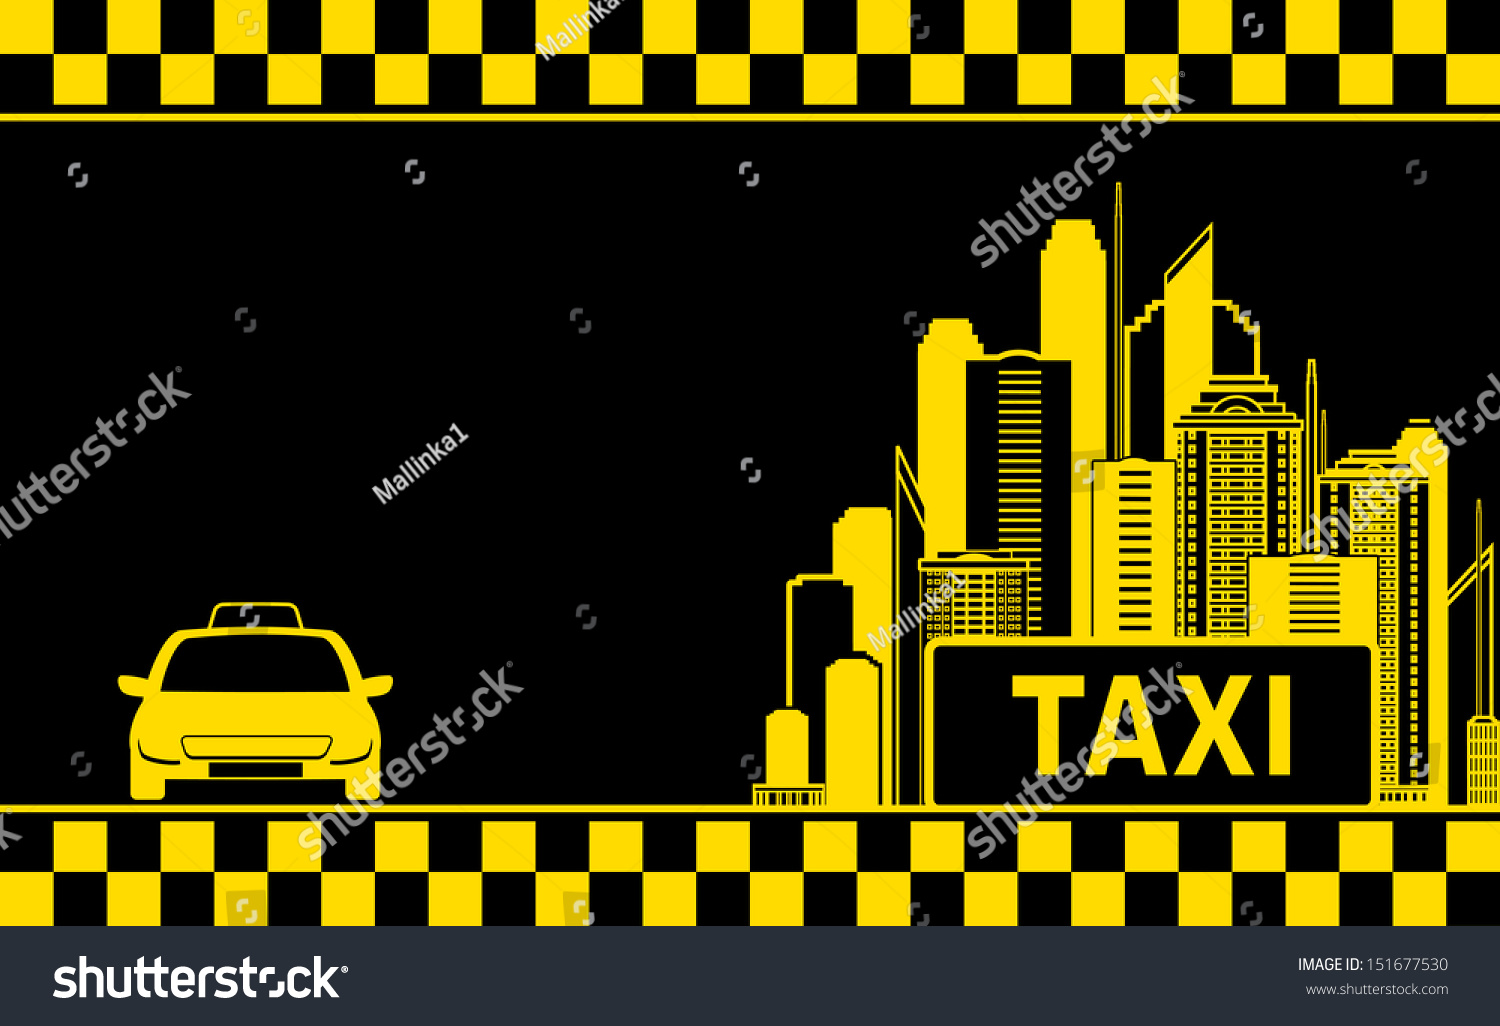 Фон для рекламы такси